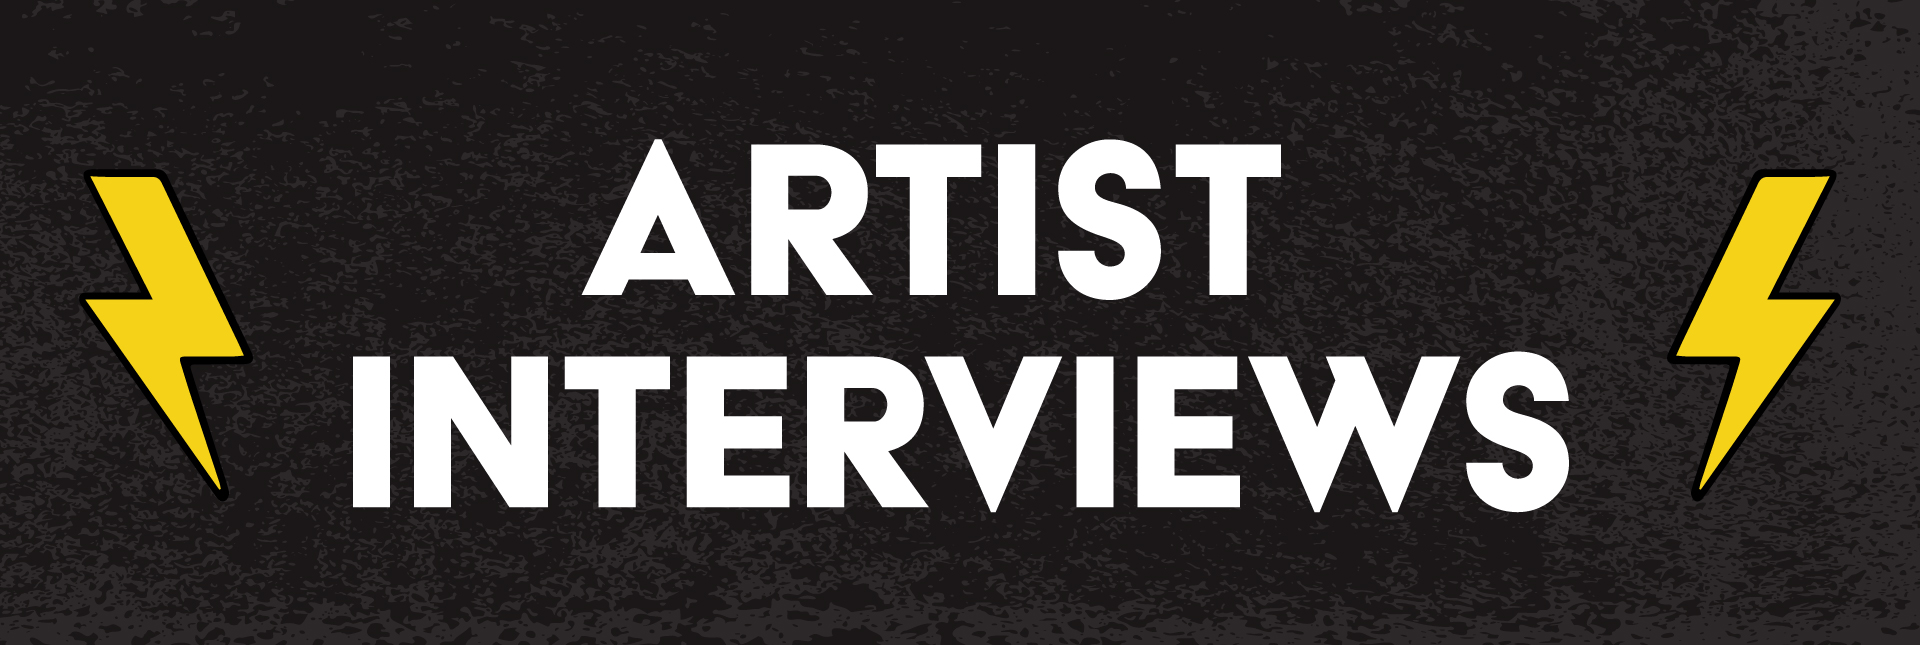 Artists interviews